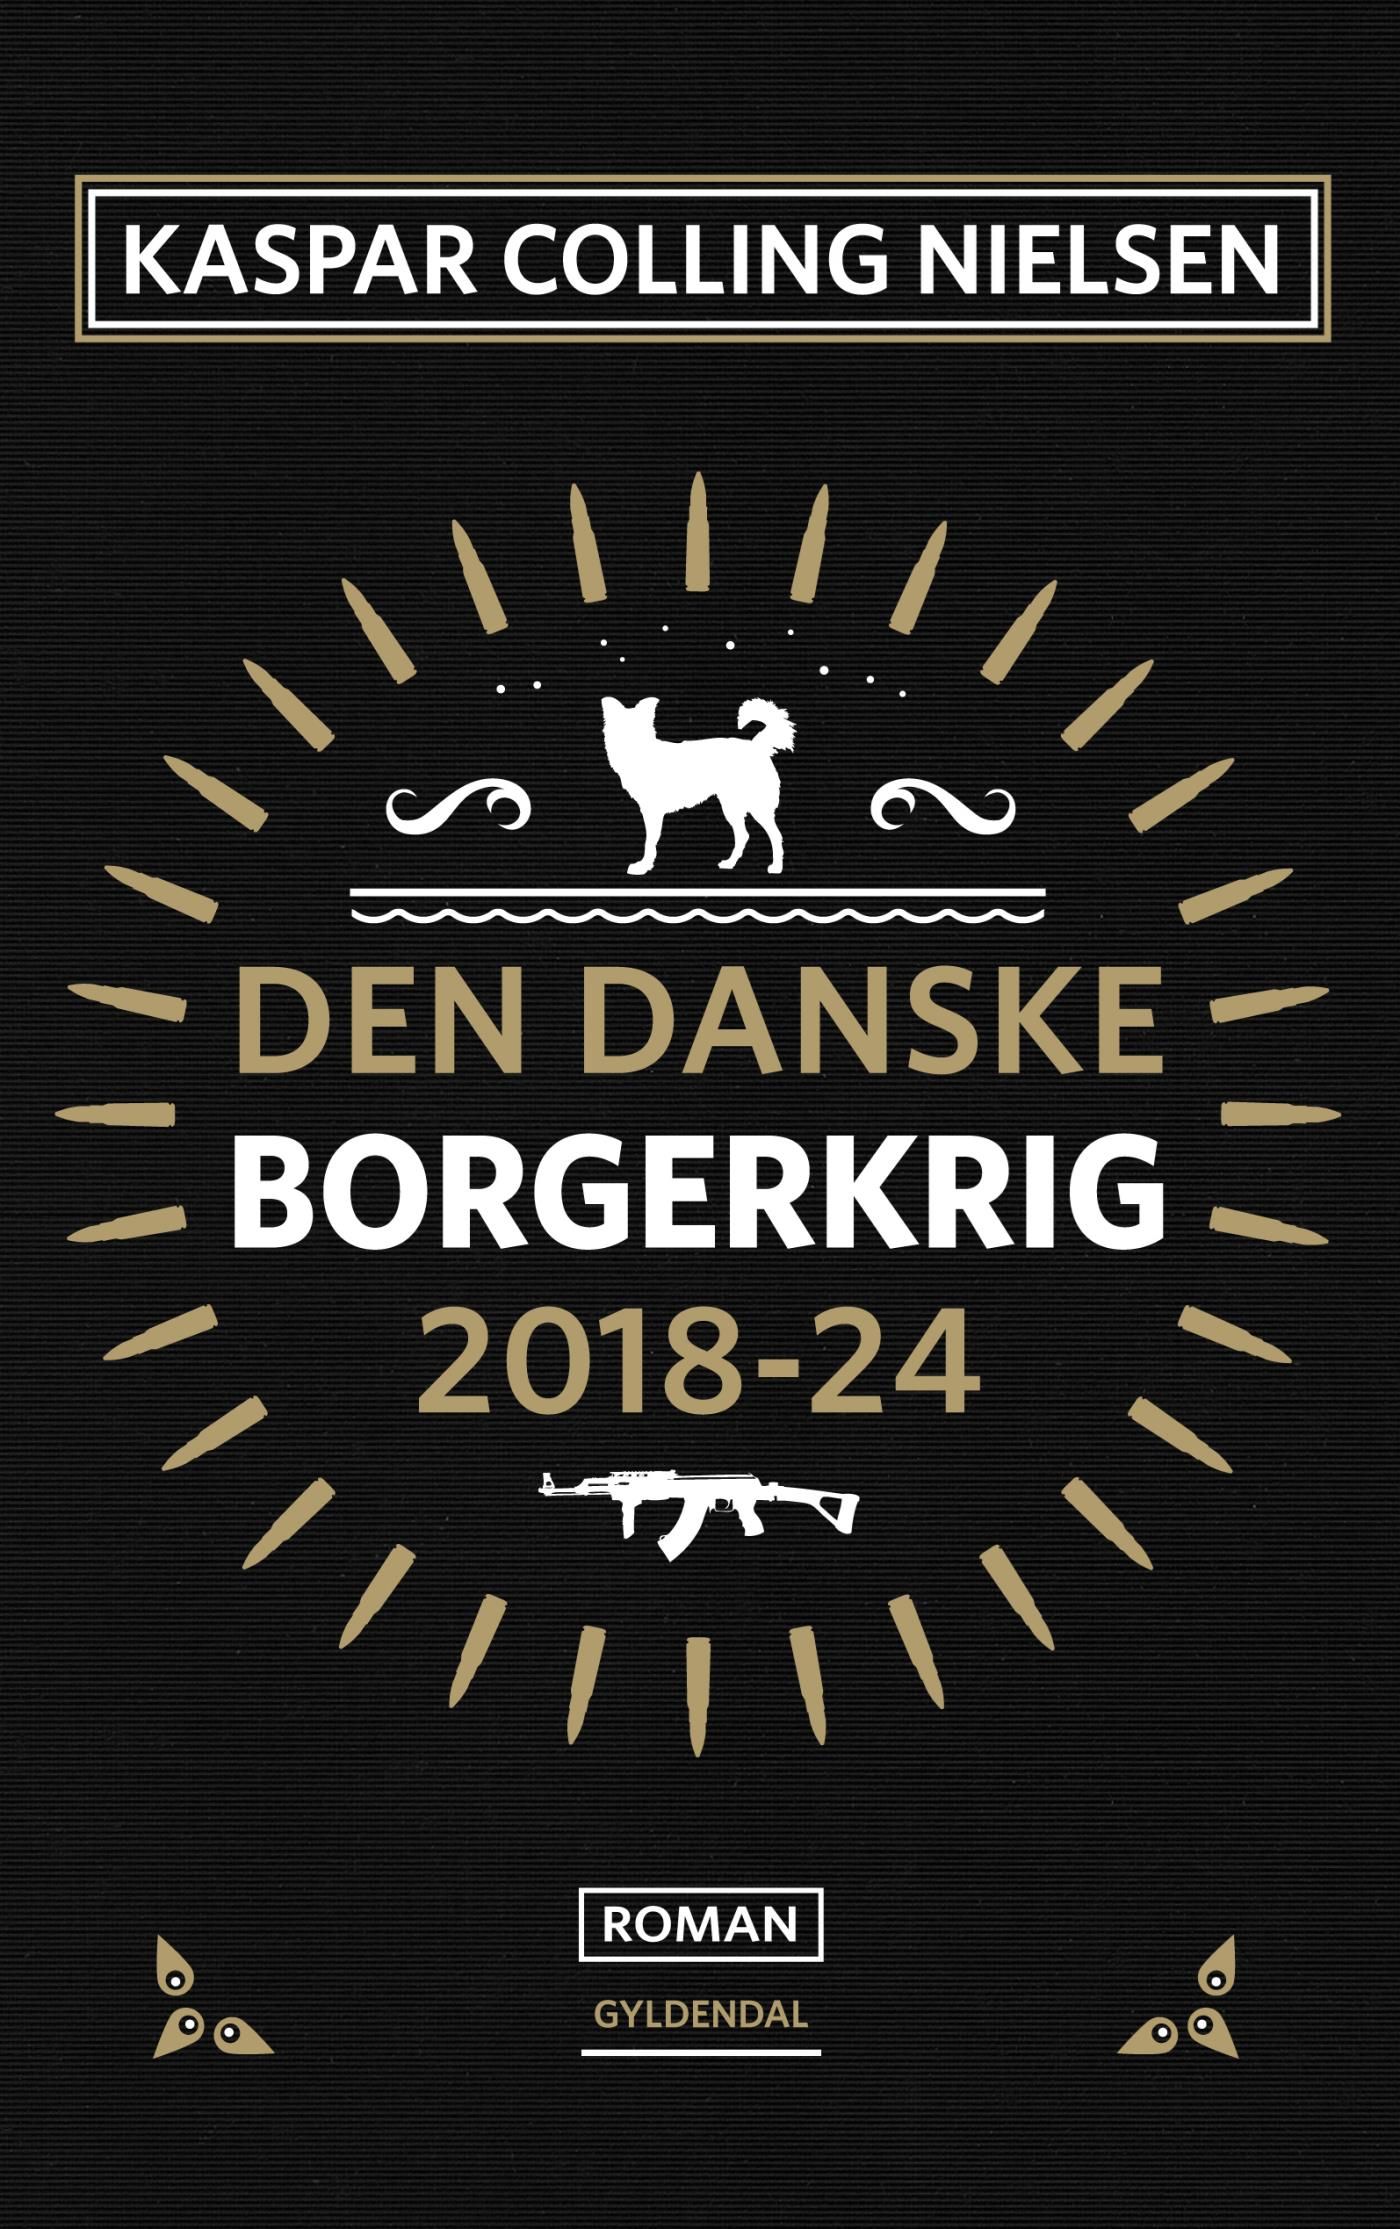 Den danske borgerkrig 2018-24, eBook by Kaspar Colling Nielsen